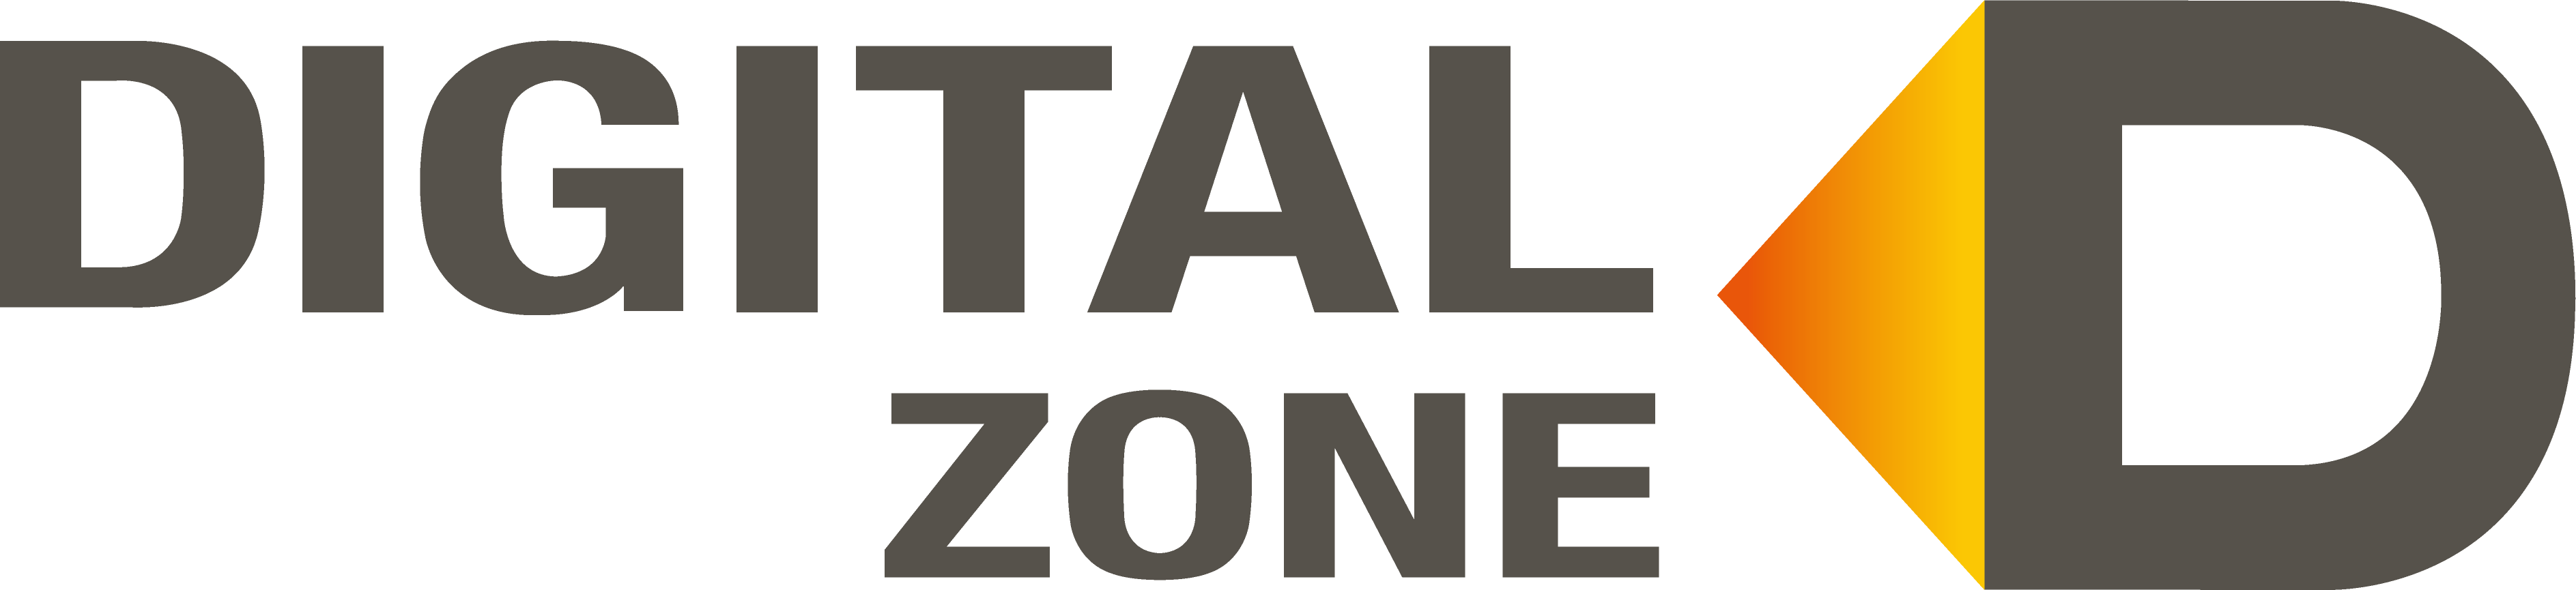 digitalzone_logo.png